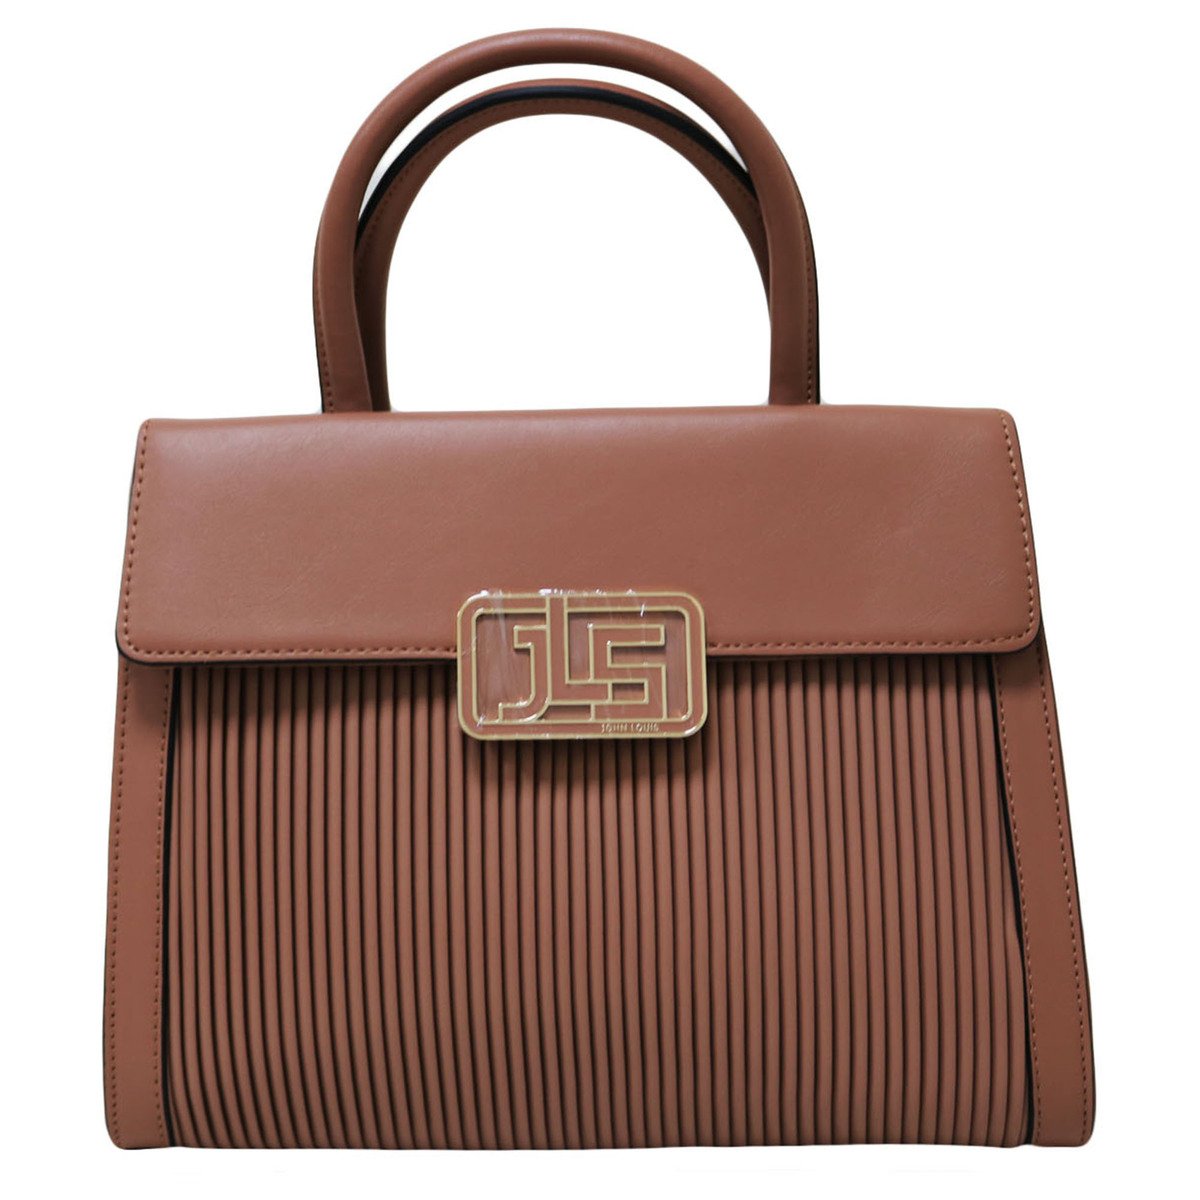 John louis women's bag 190985c, beige offer at Lulu Hypermarket